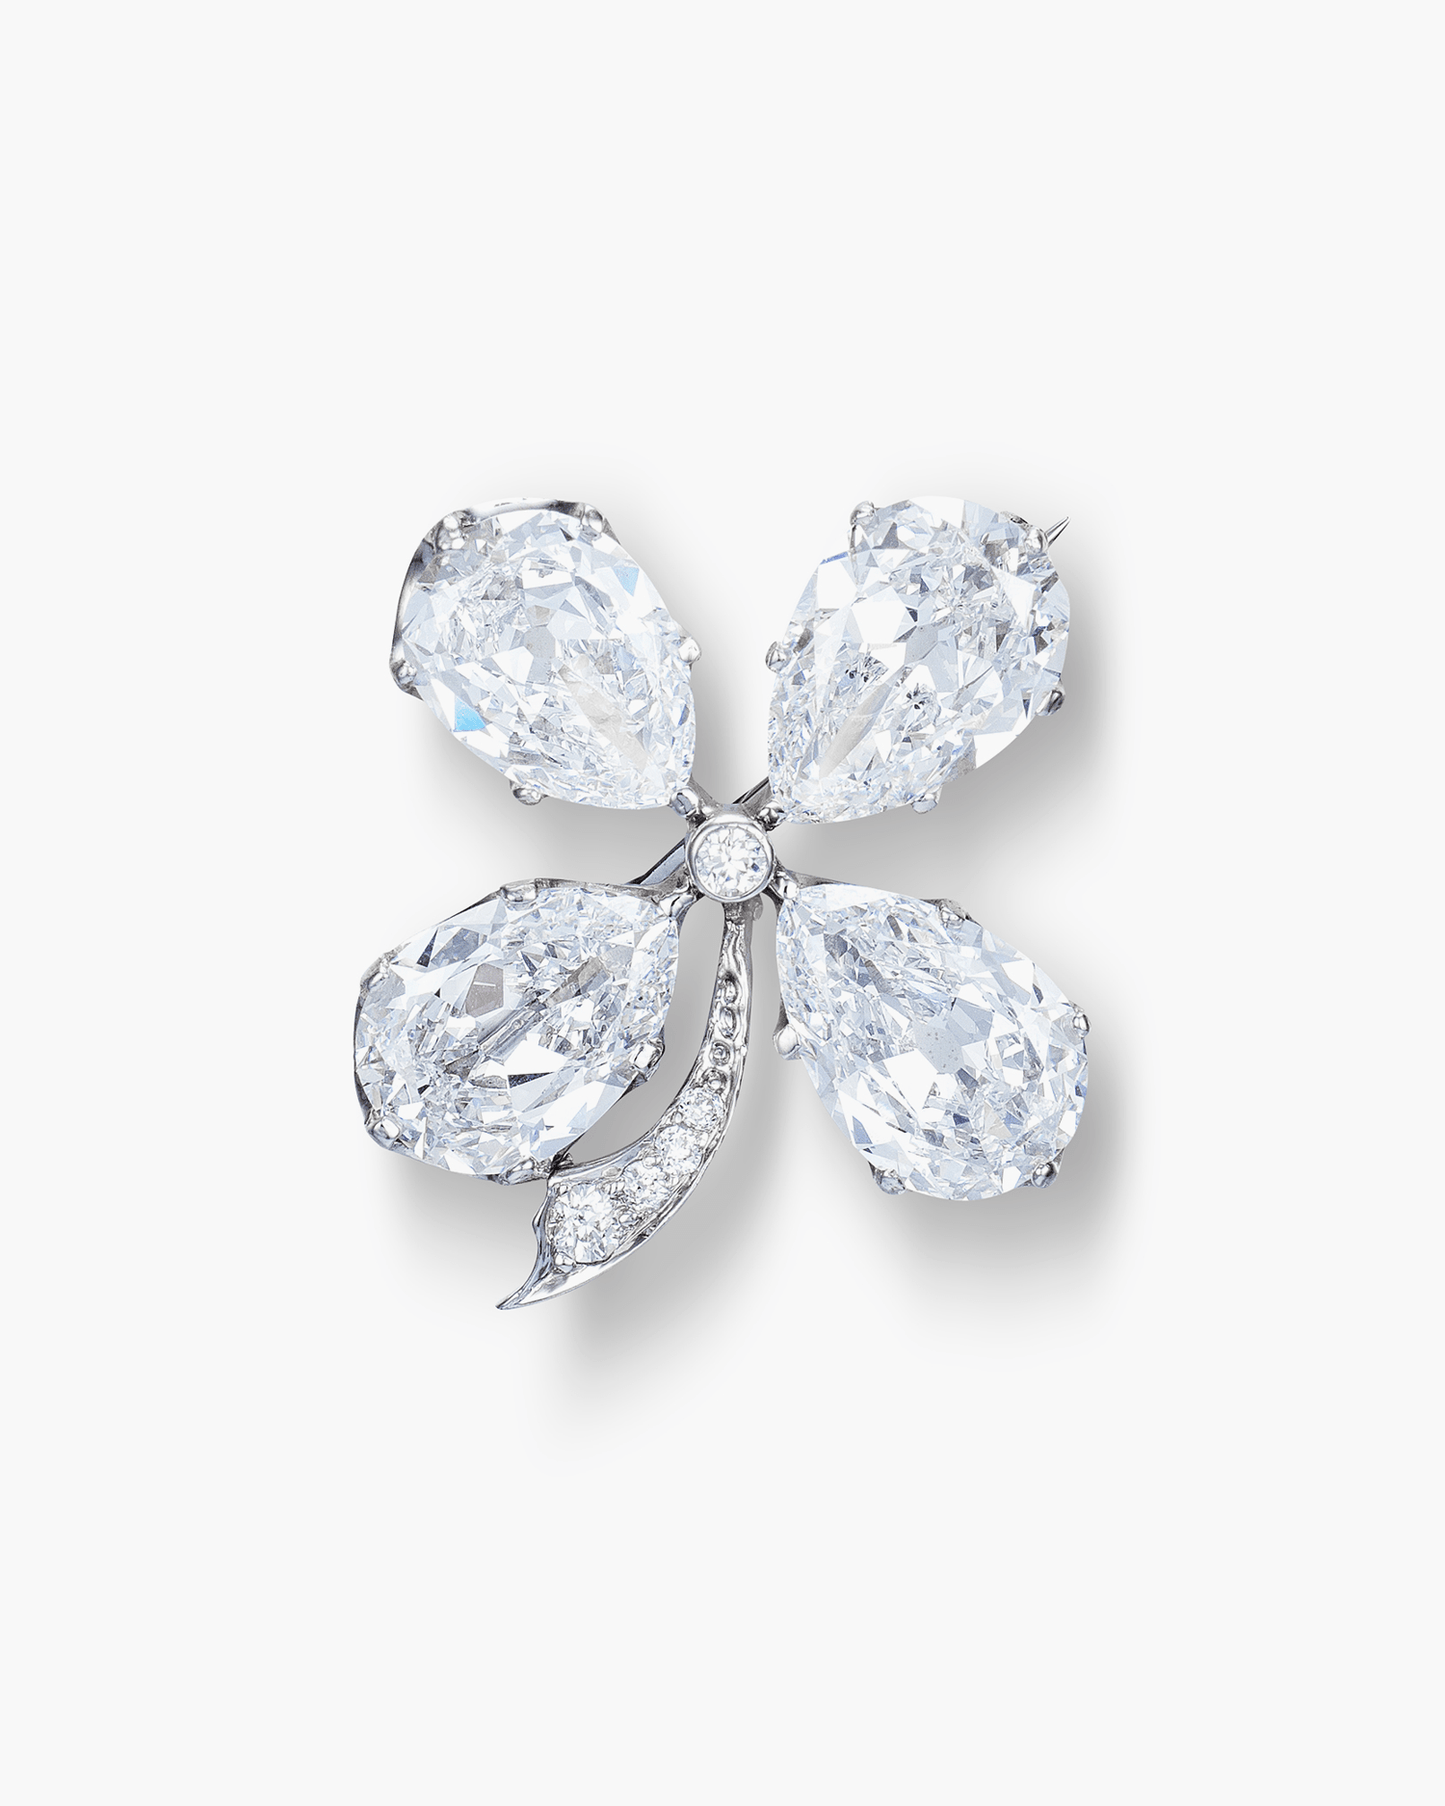 Edwardian Diamond Four-Leaf Clover Brooch by Tiffany & Co.